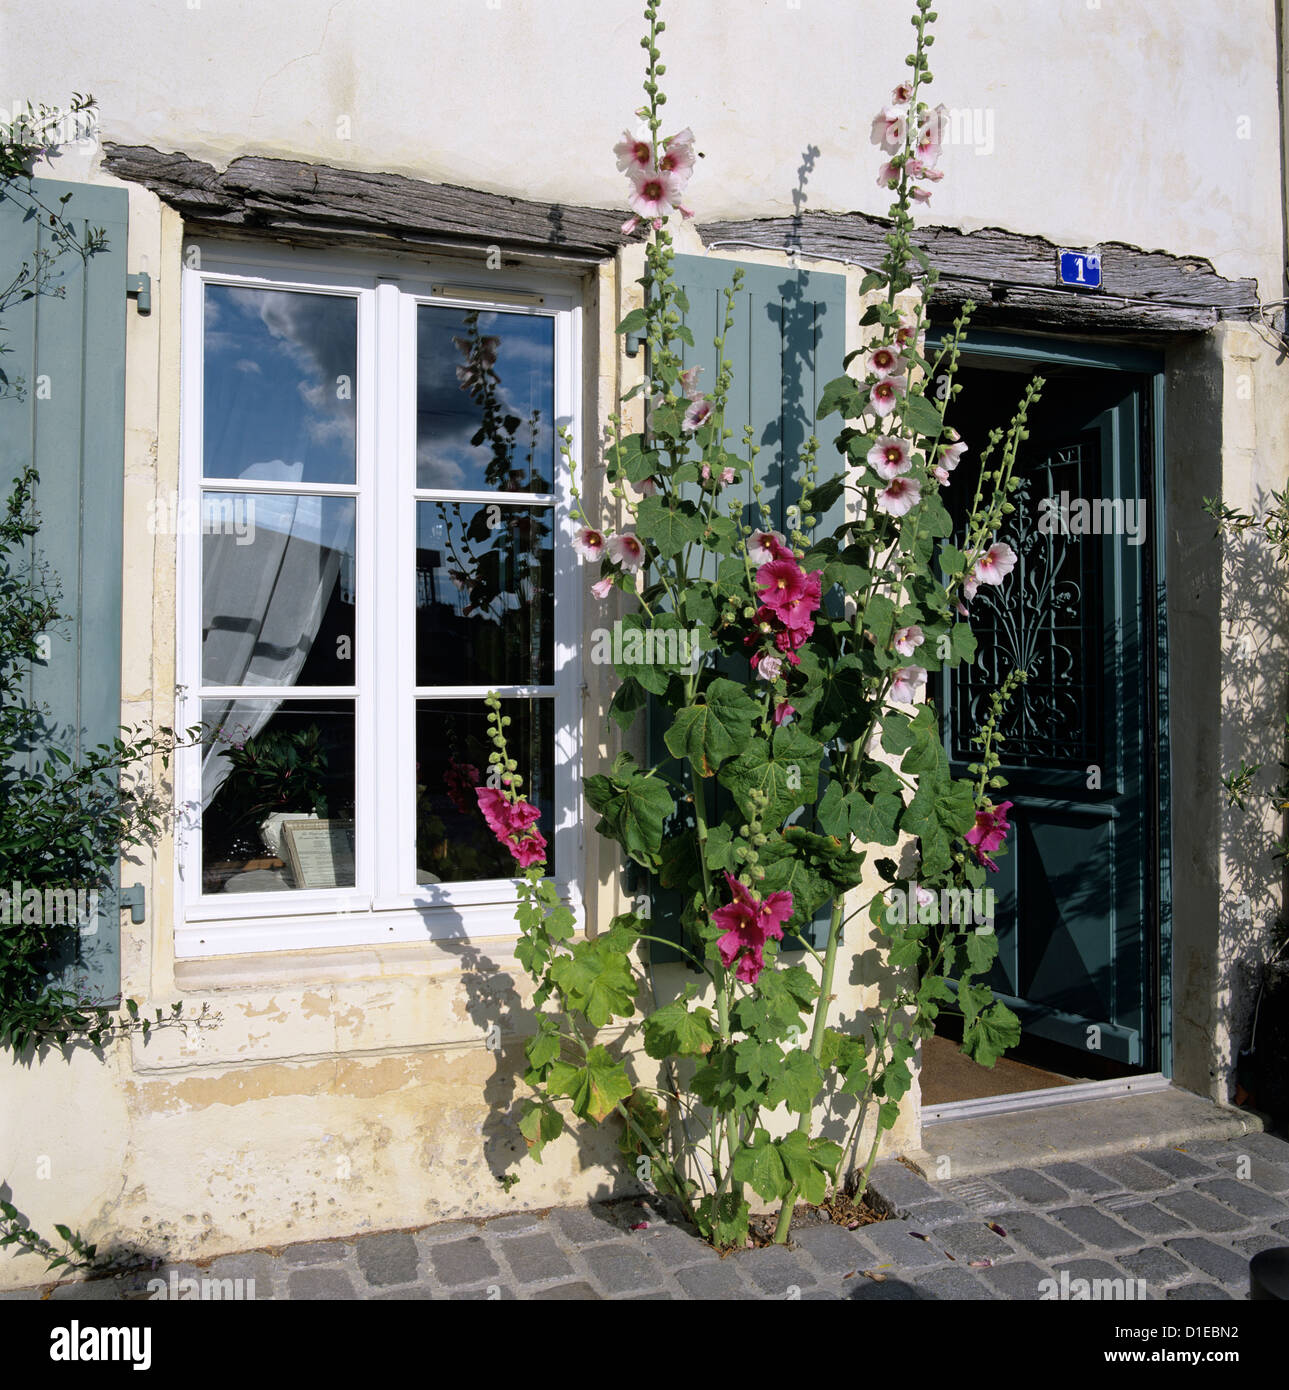 Scène typique de fenêtres à volets et roses trémières, Saint Martin, Ile de Ré, Poitou-Charentes, France, Europe Banque D'Images